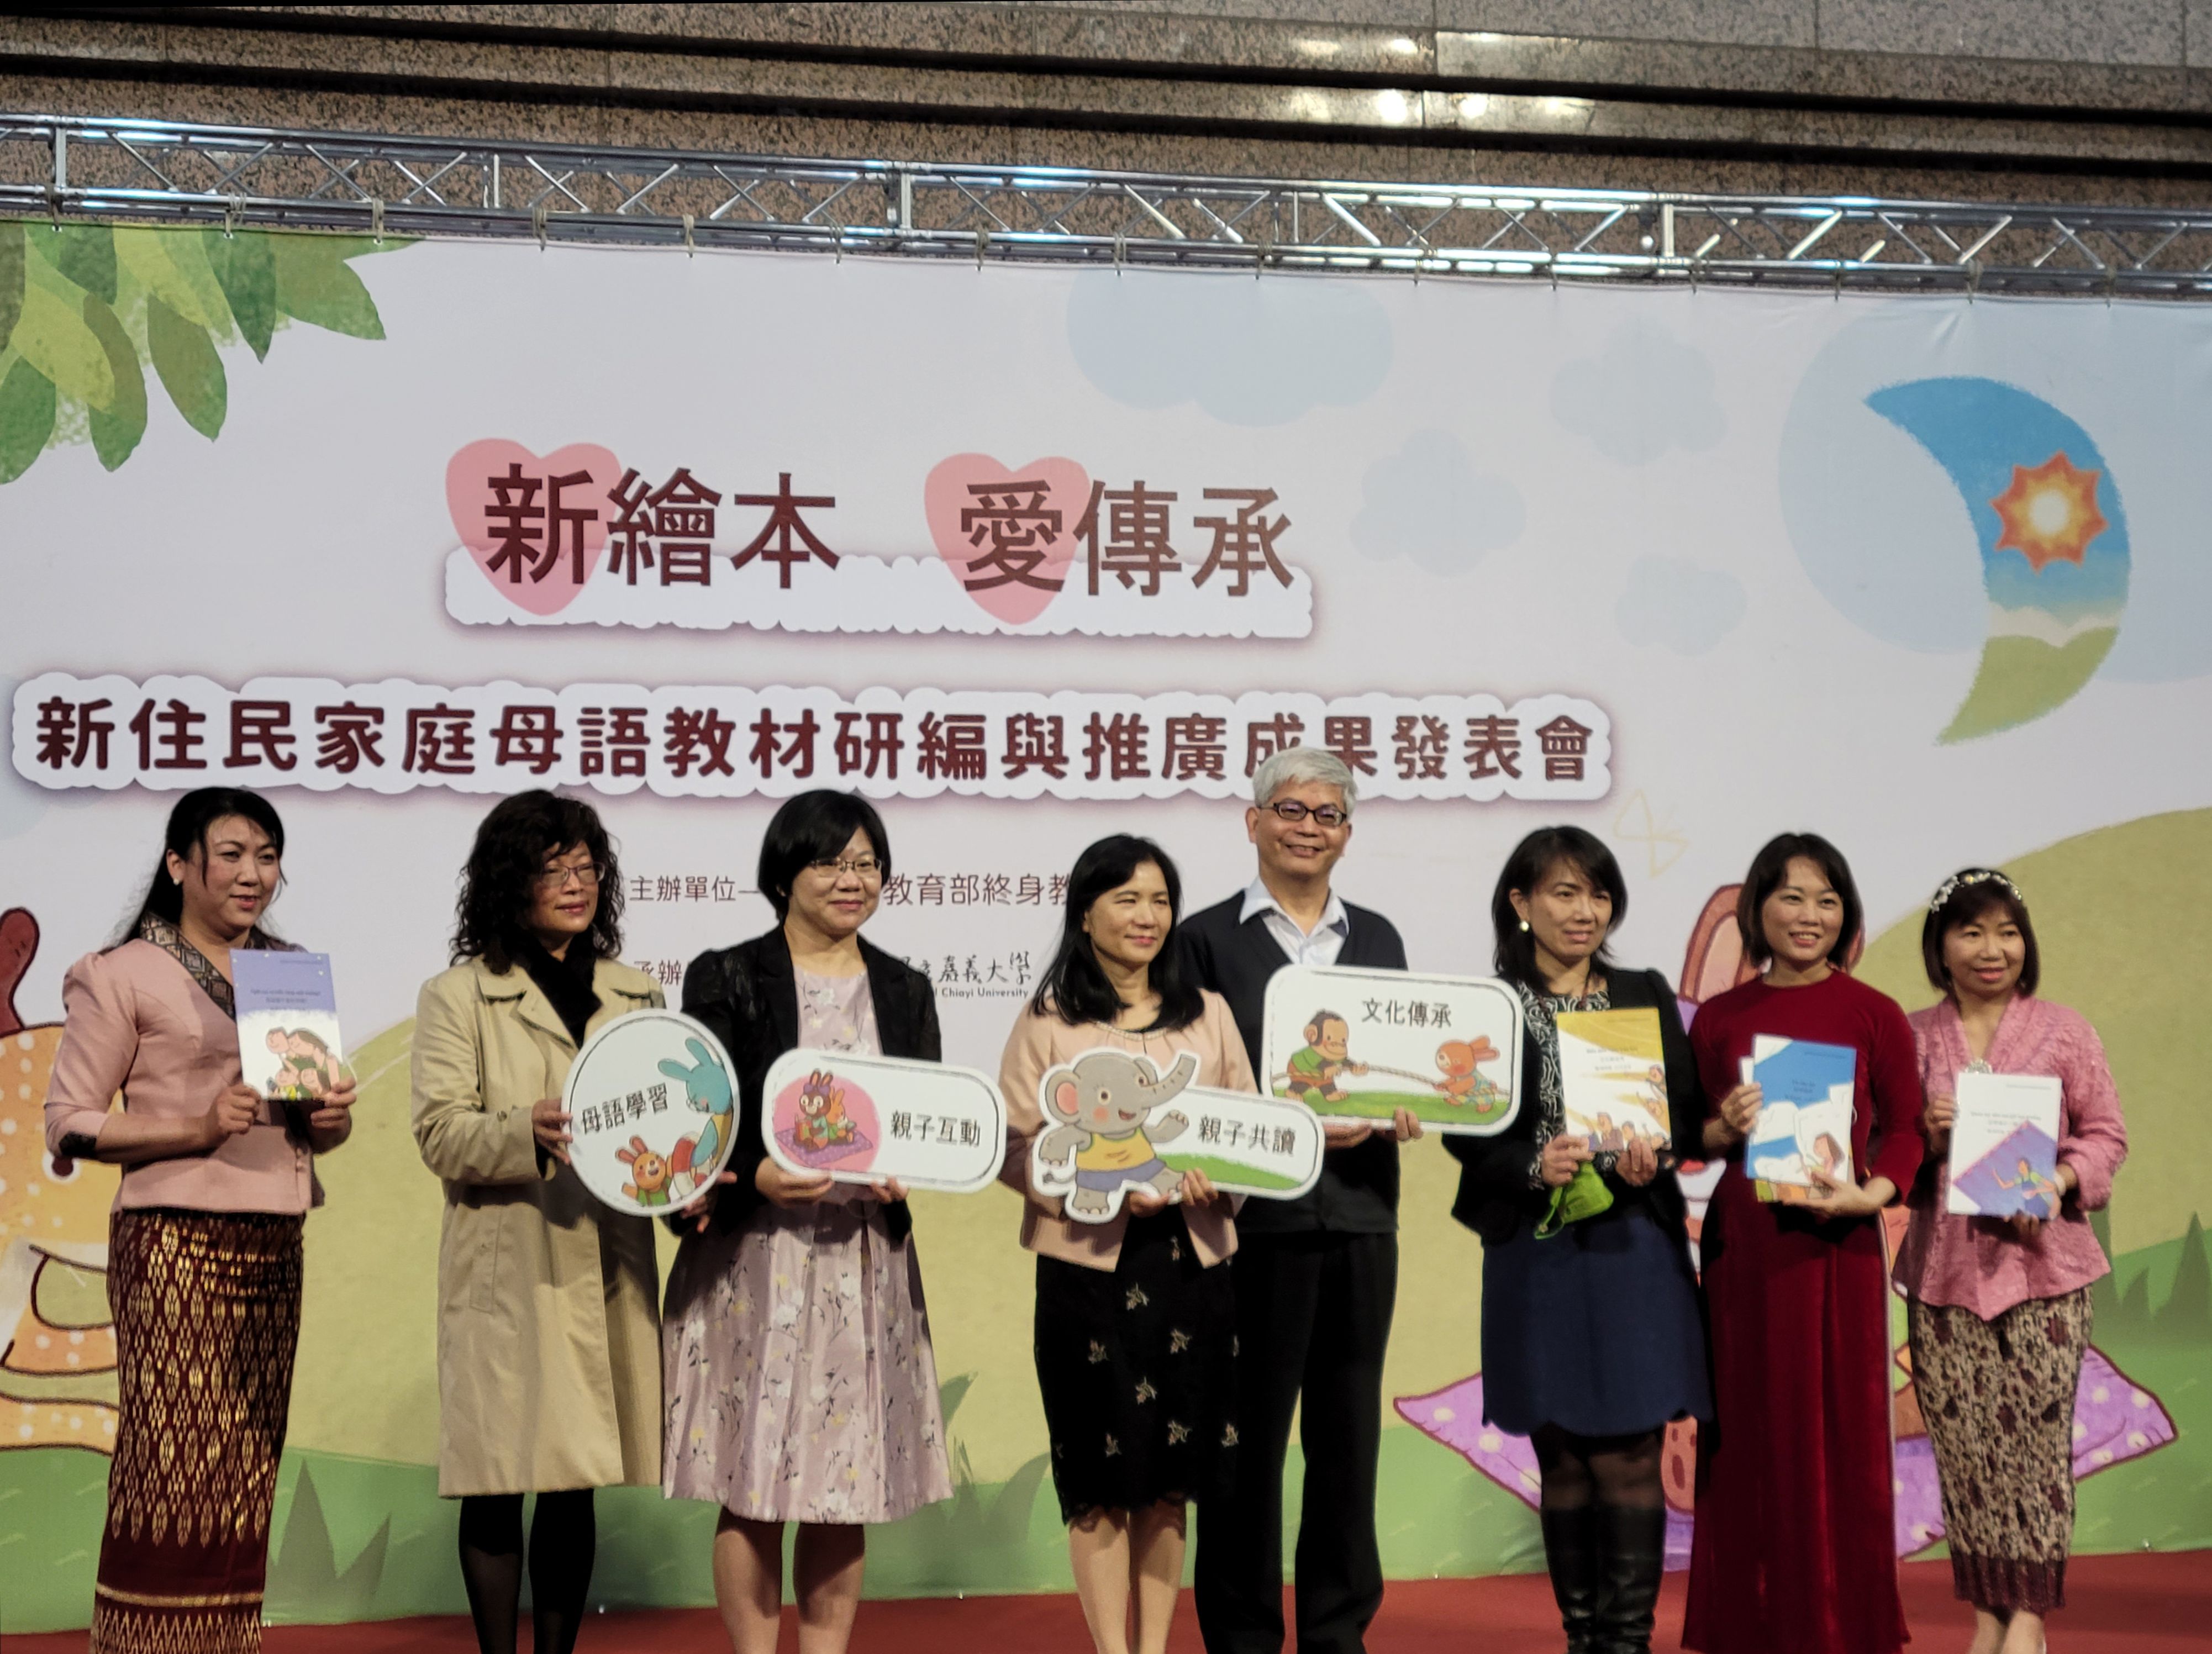 หนังสือภาพ 7 ภาษาในเอเชียตะวันออกเฉียงใต้ได้รับการตีพิมพ์อย่างเป็นทางการ ศธ.ร่วมกับม.เจียอี้ส่งเสริมครอบครัวผู้ตั้งถิ่นฐานใหม่รักการอ่าน ภาพ／จาก มหาวิทยาลัยแห่งชาติเจียอี้